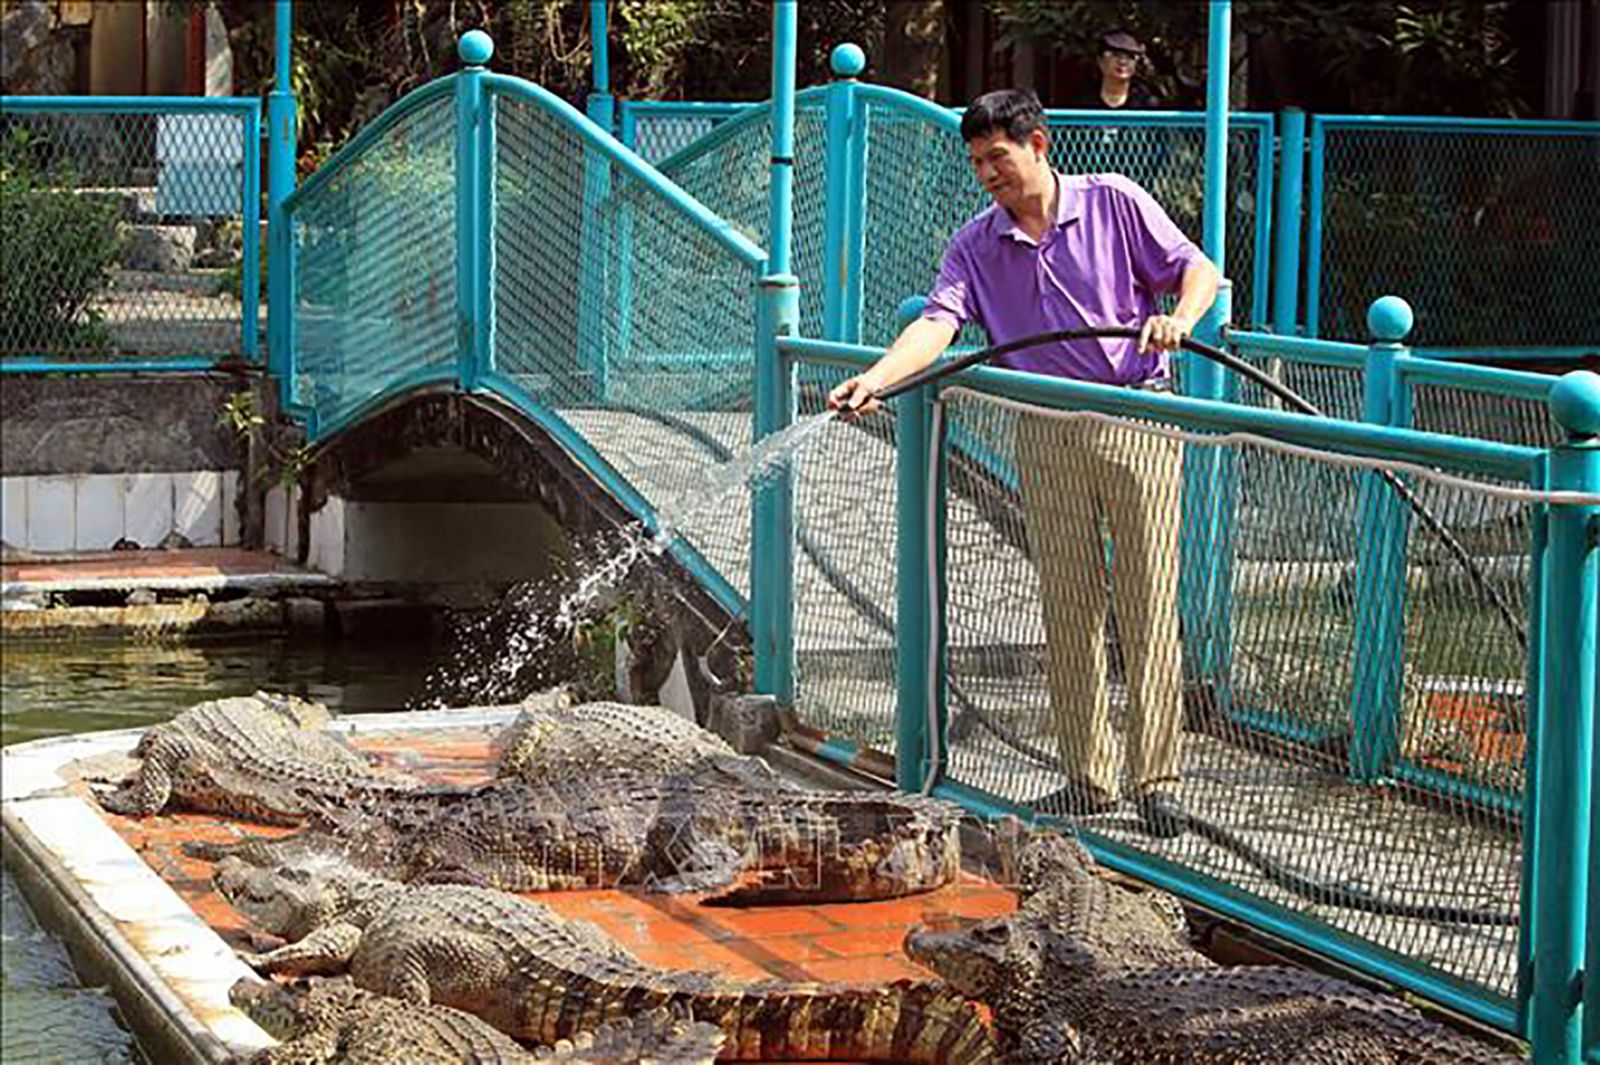  Với doanh nhân Cao Văn Tuấn, việc kinh doanh cá sấu là để thỏa mãn đam mê trên nền tảng hình tượng văn hóa và kiếm tiền để không phải nghĩ đến khi sưu tầm và lưu giữ món đồ.. 